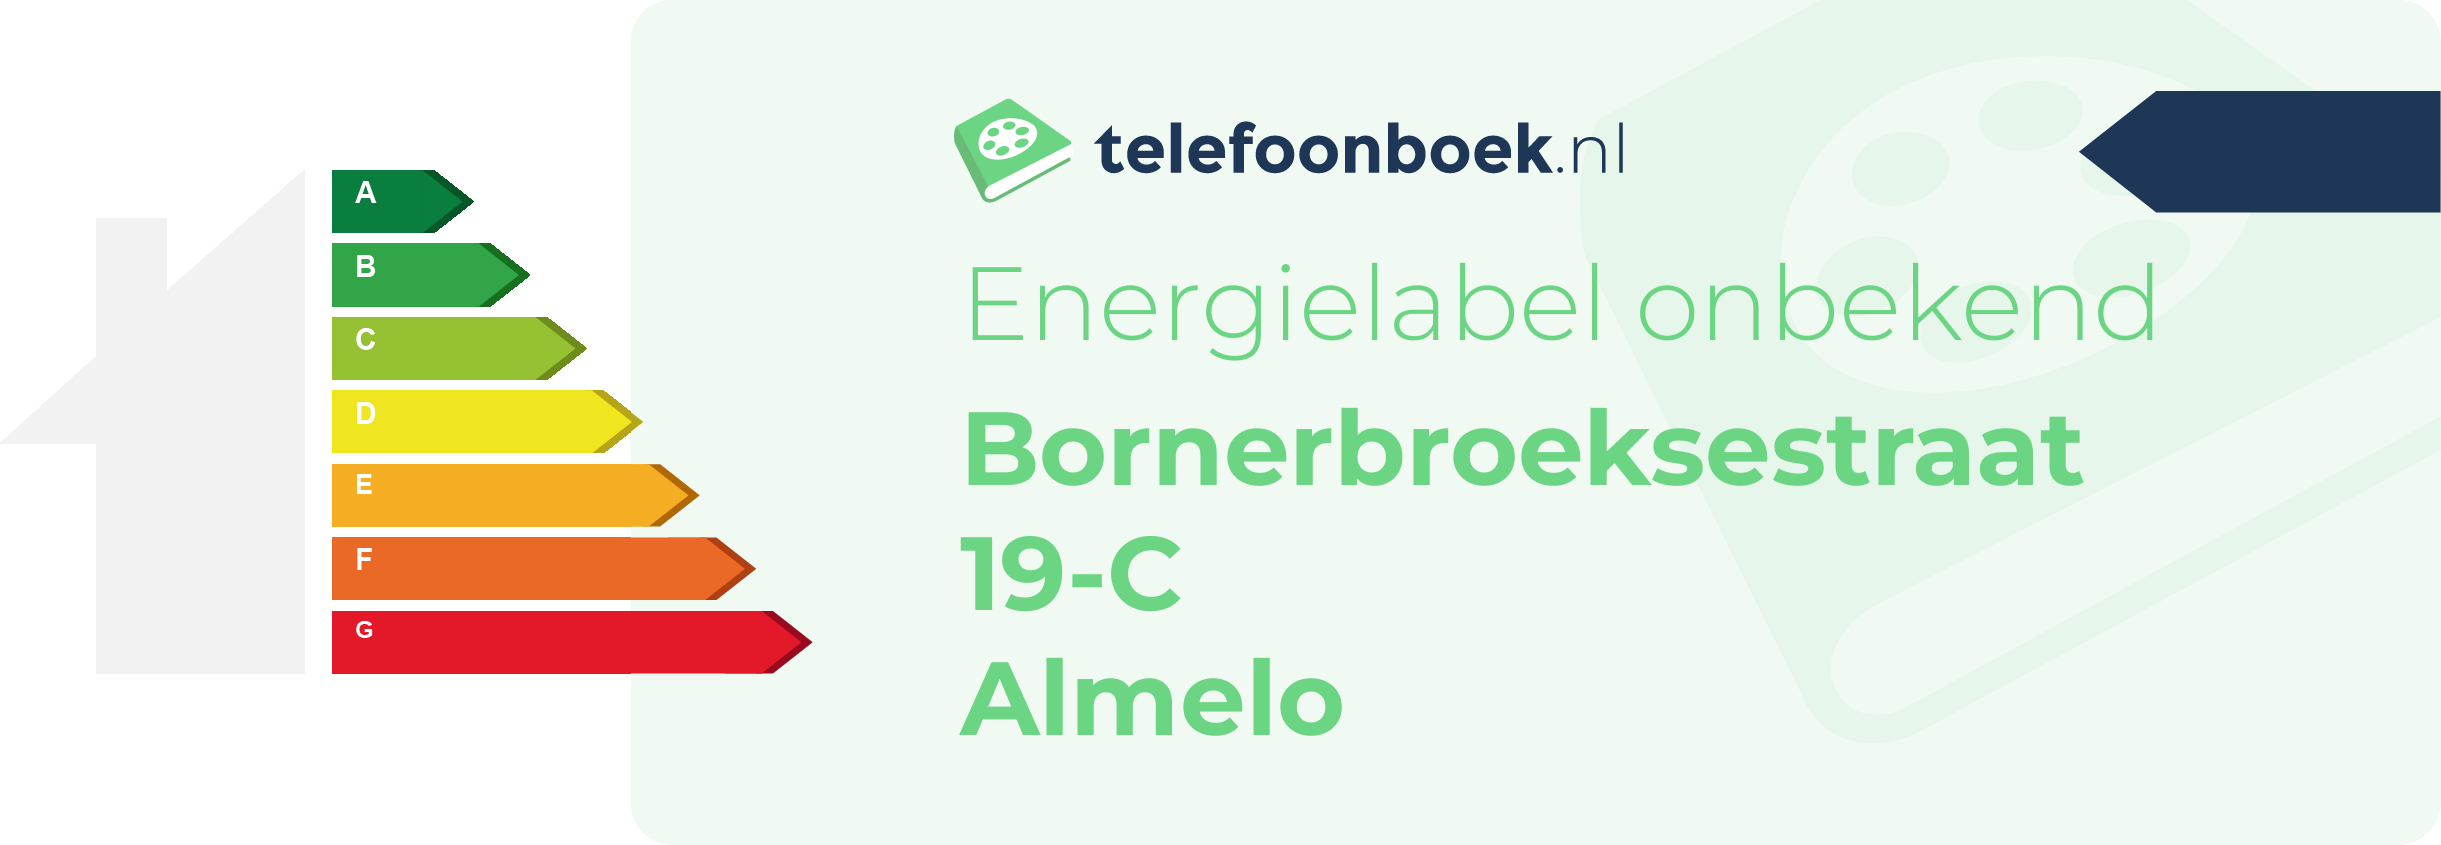 Energielabel Bornerbroeksestraat 19-C Almelo